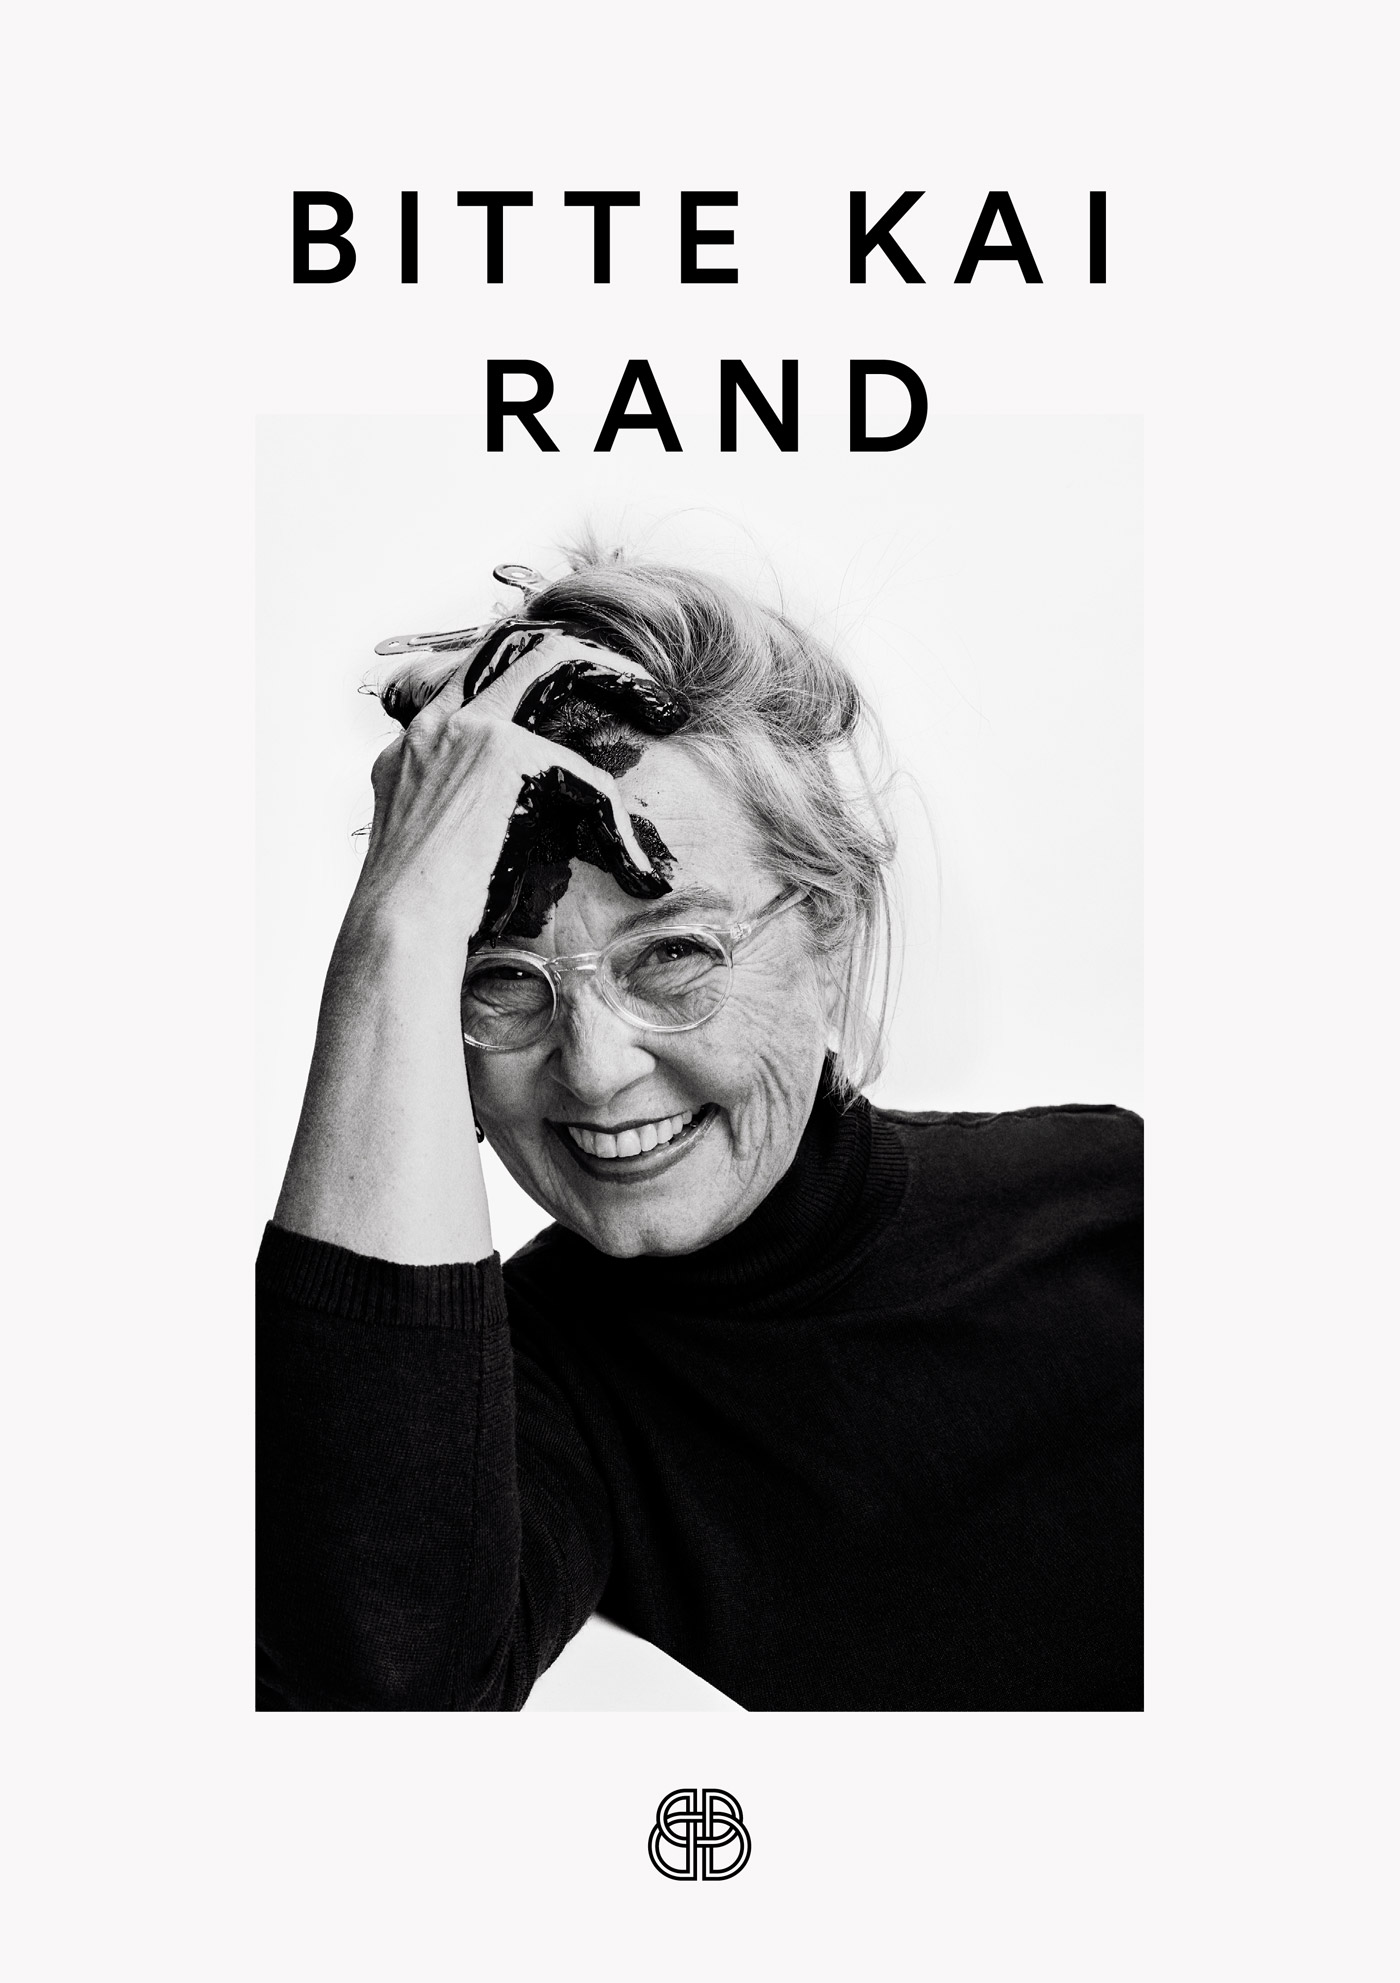 Bitte Kai Rand – Manifesto portrait